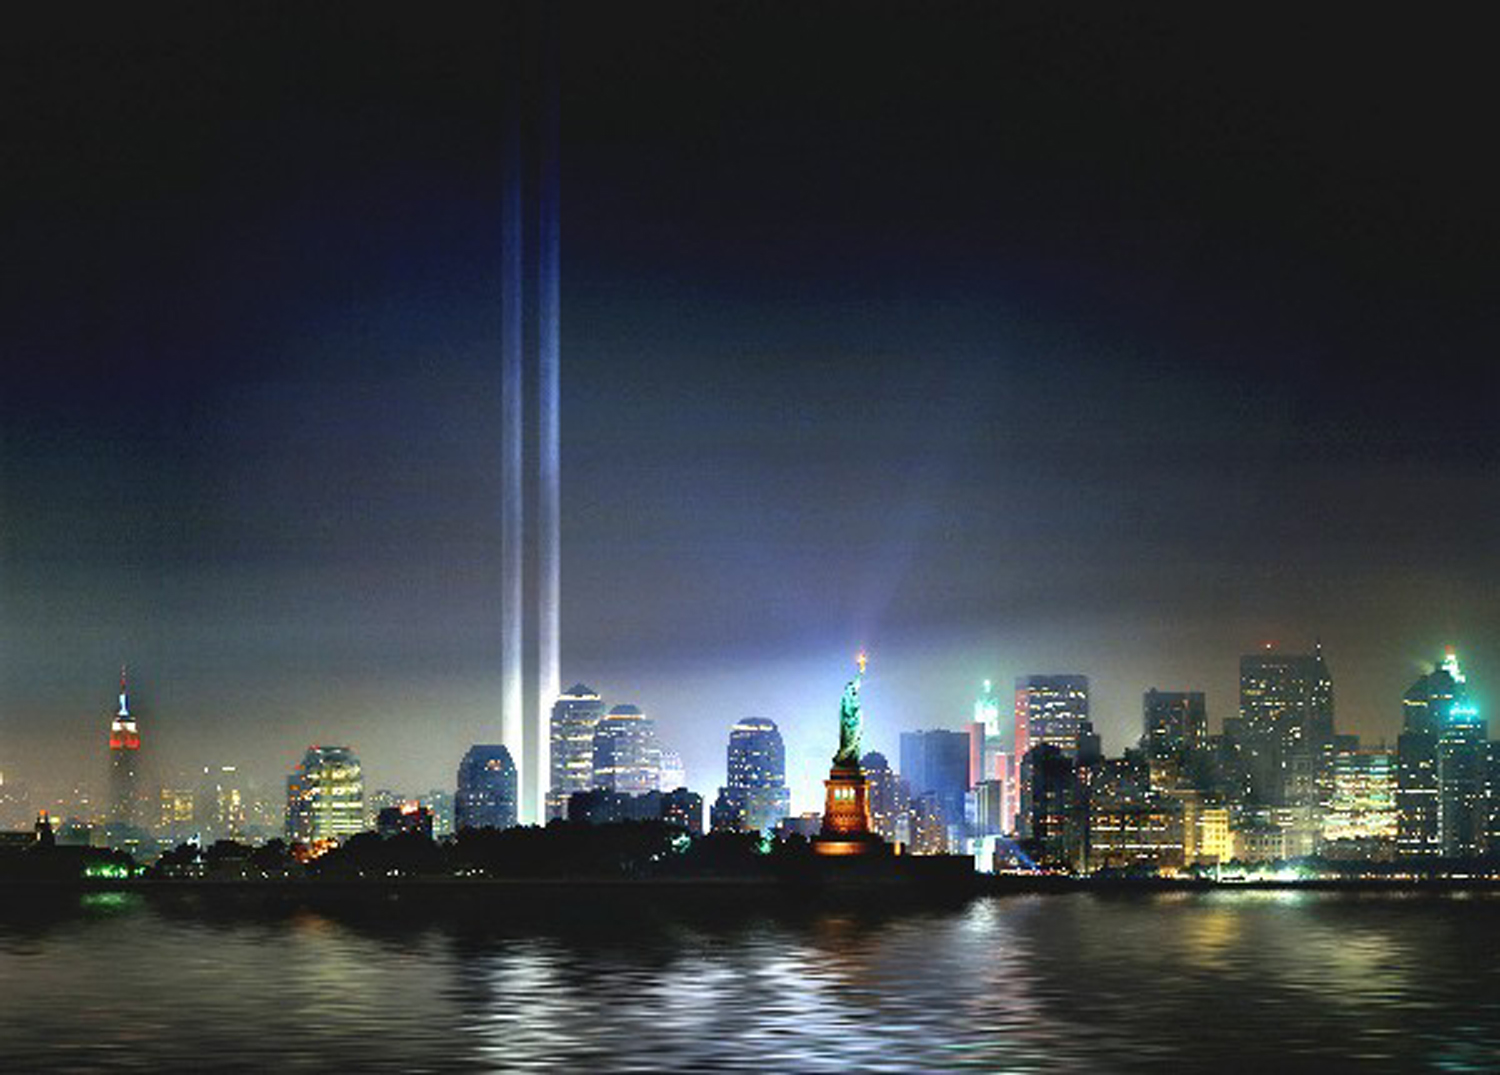 9 11 tapete,metropolregion,stadtbild,stadt,horizont,wolkenkratzer